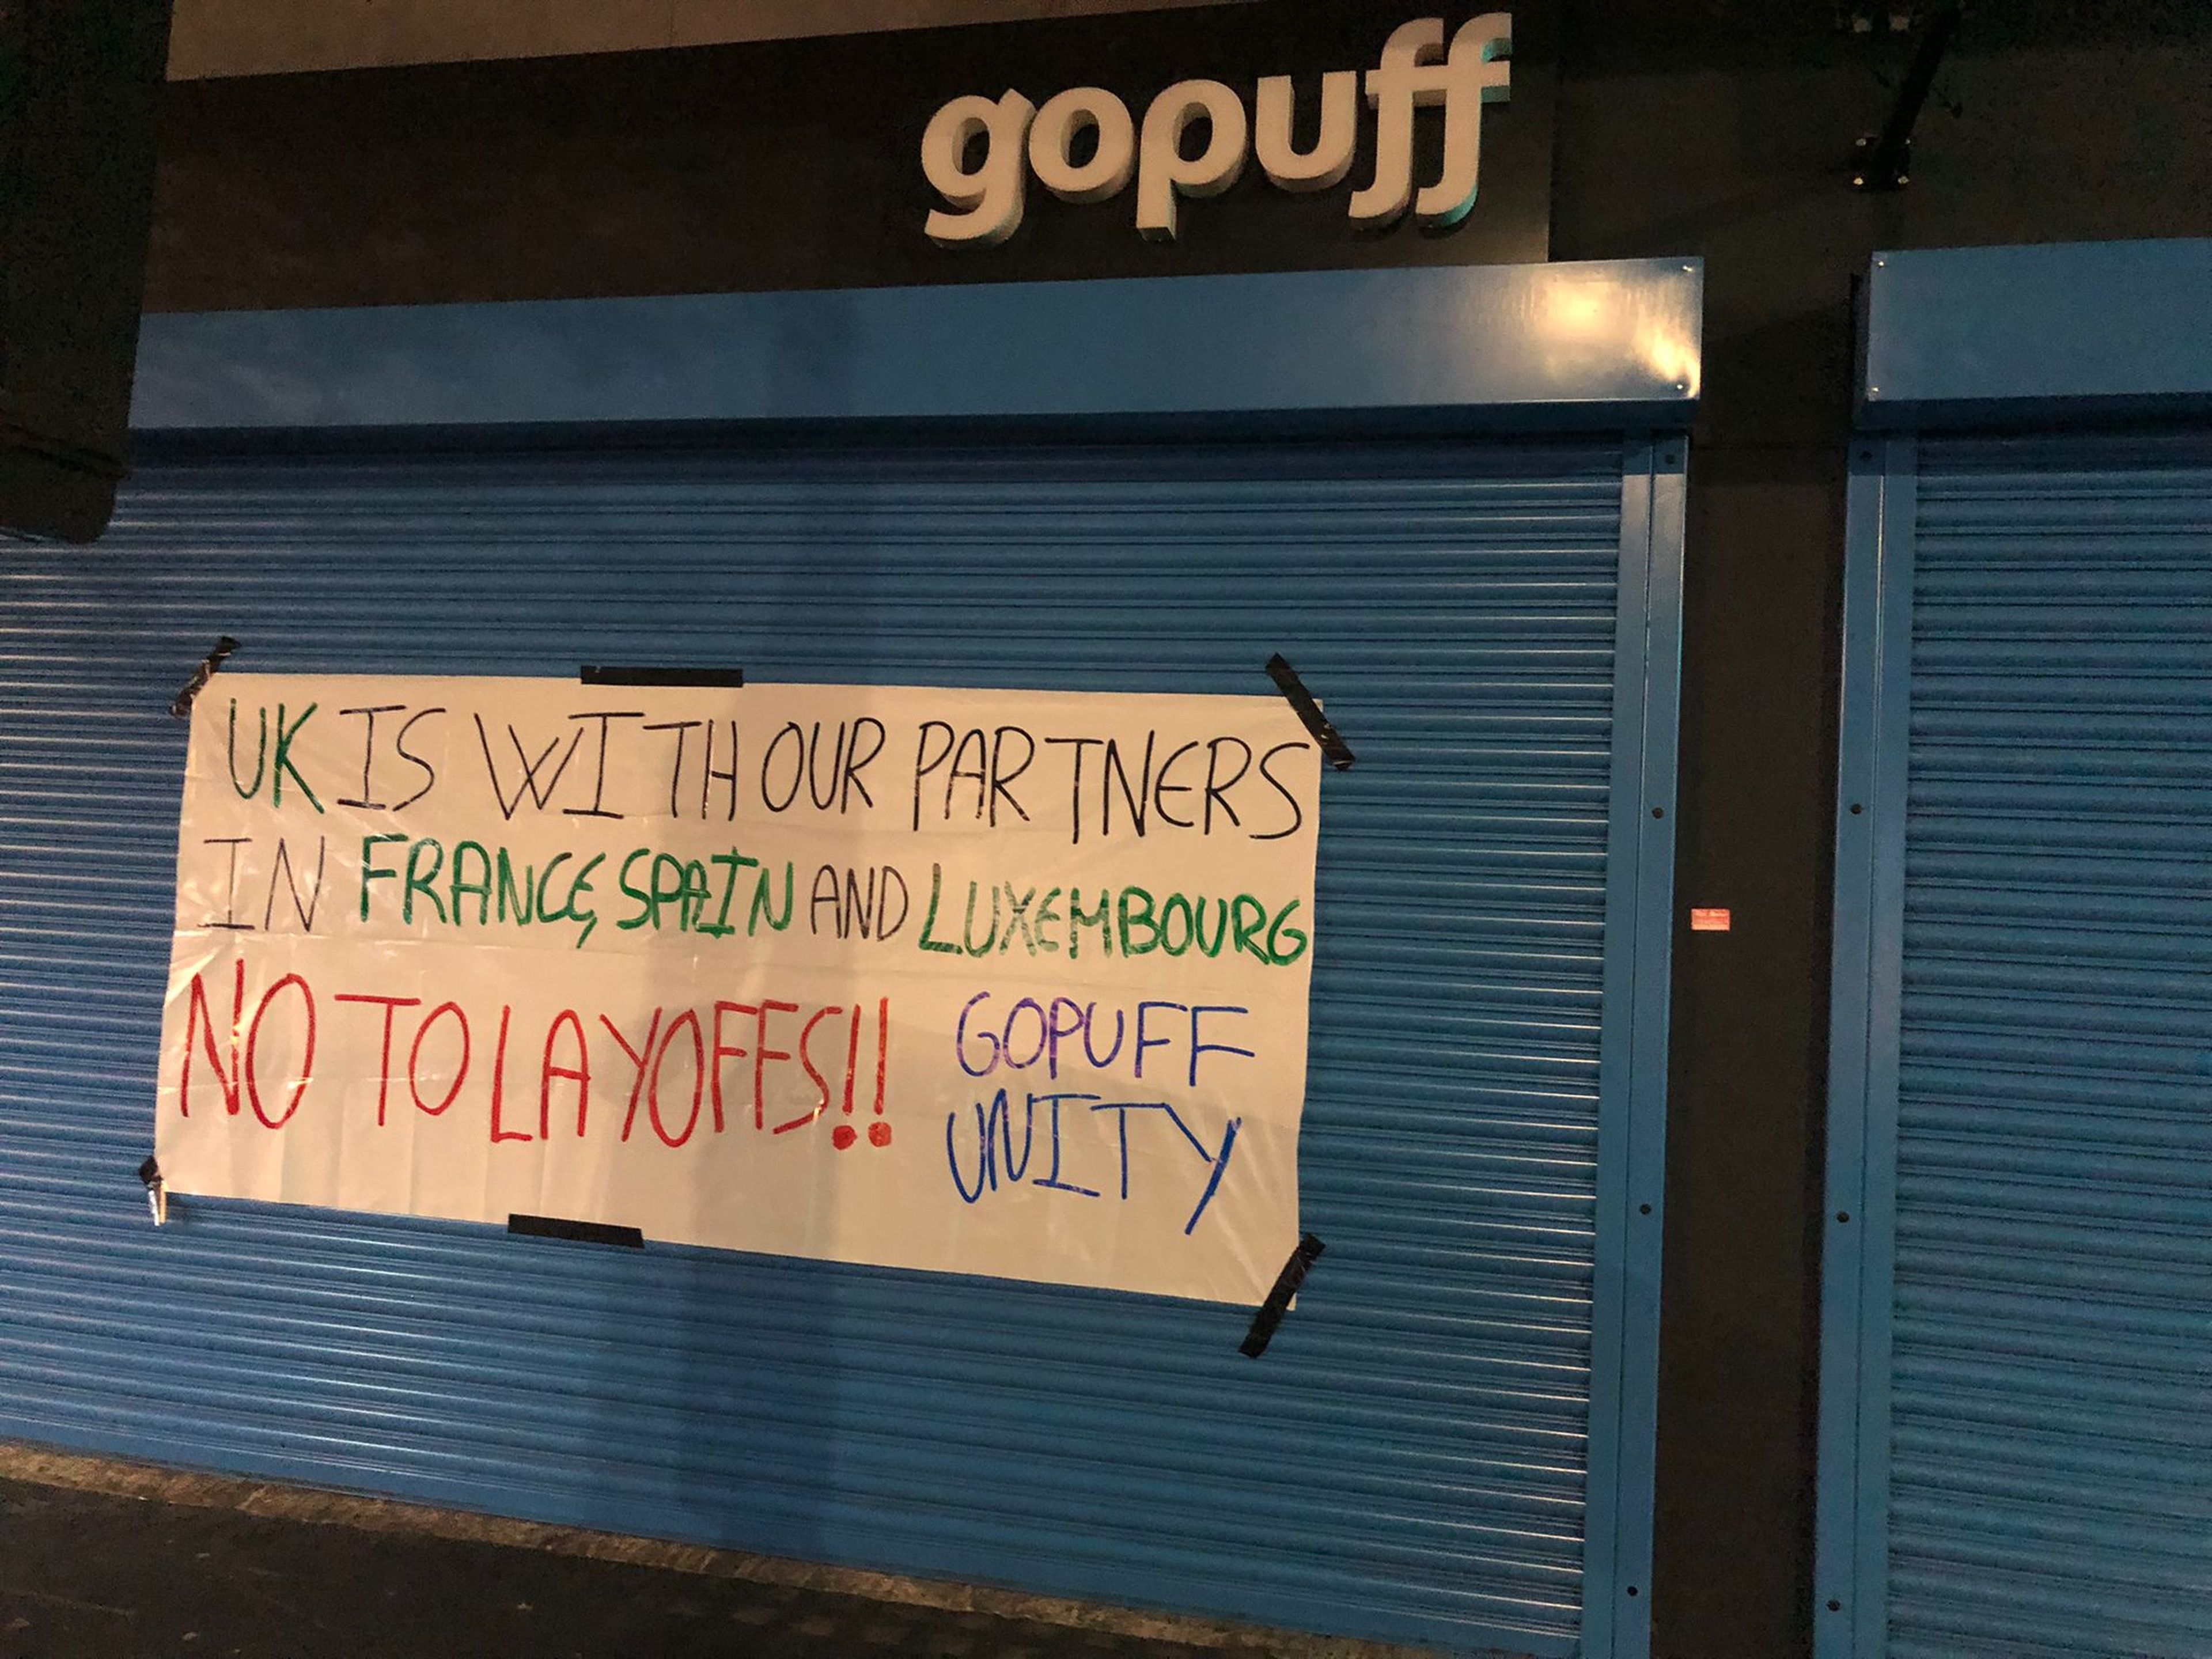 Una pancarta en una tienda de Gopuff de Londres muestra un mensaje de solidaridad con los compañeros de España. "No a los despidos", se puede leer.